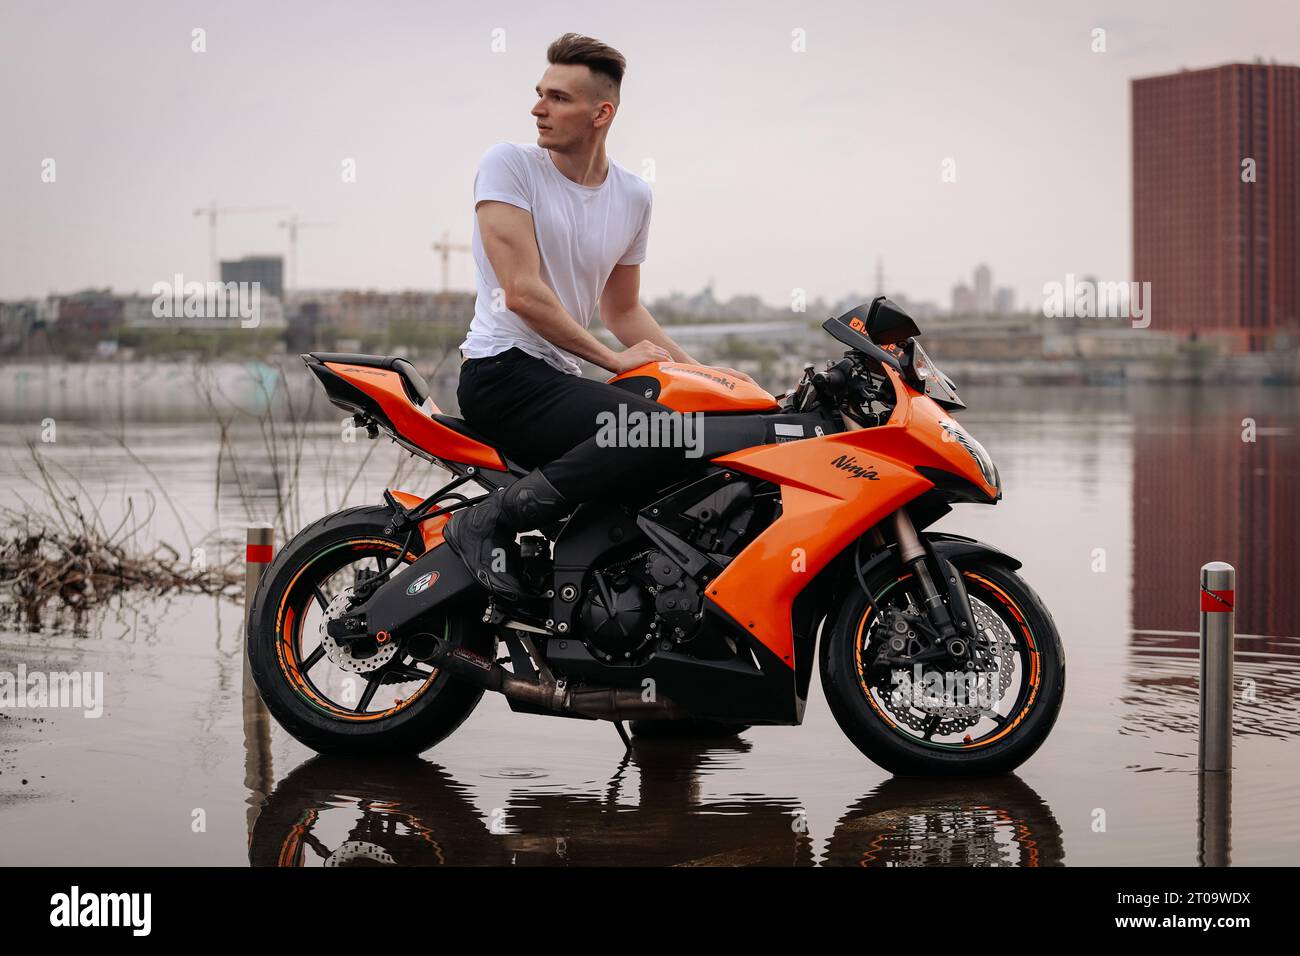 Me on my orange Kawasaki Ninja 1000 motorcycle from 2008 in Ukraine. Stock Photo